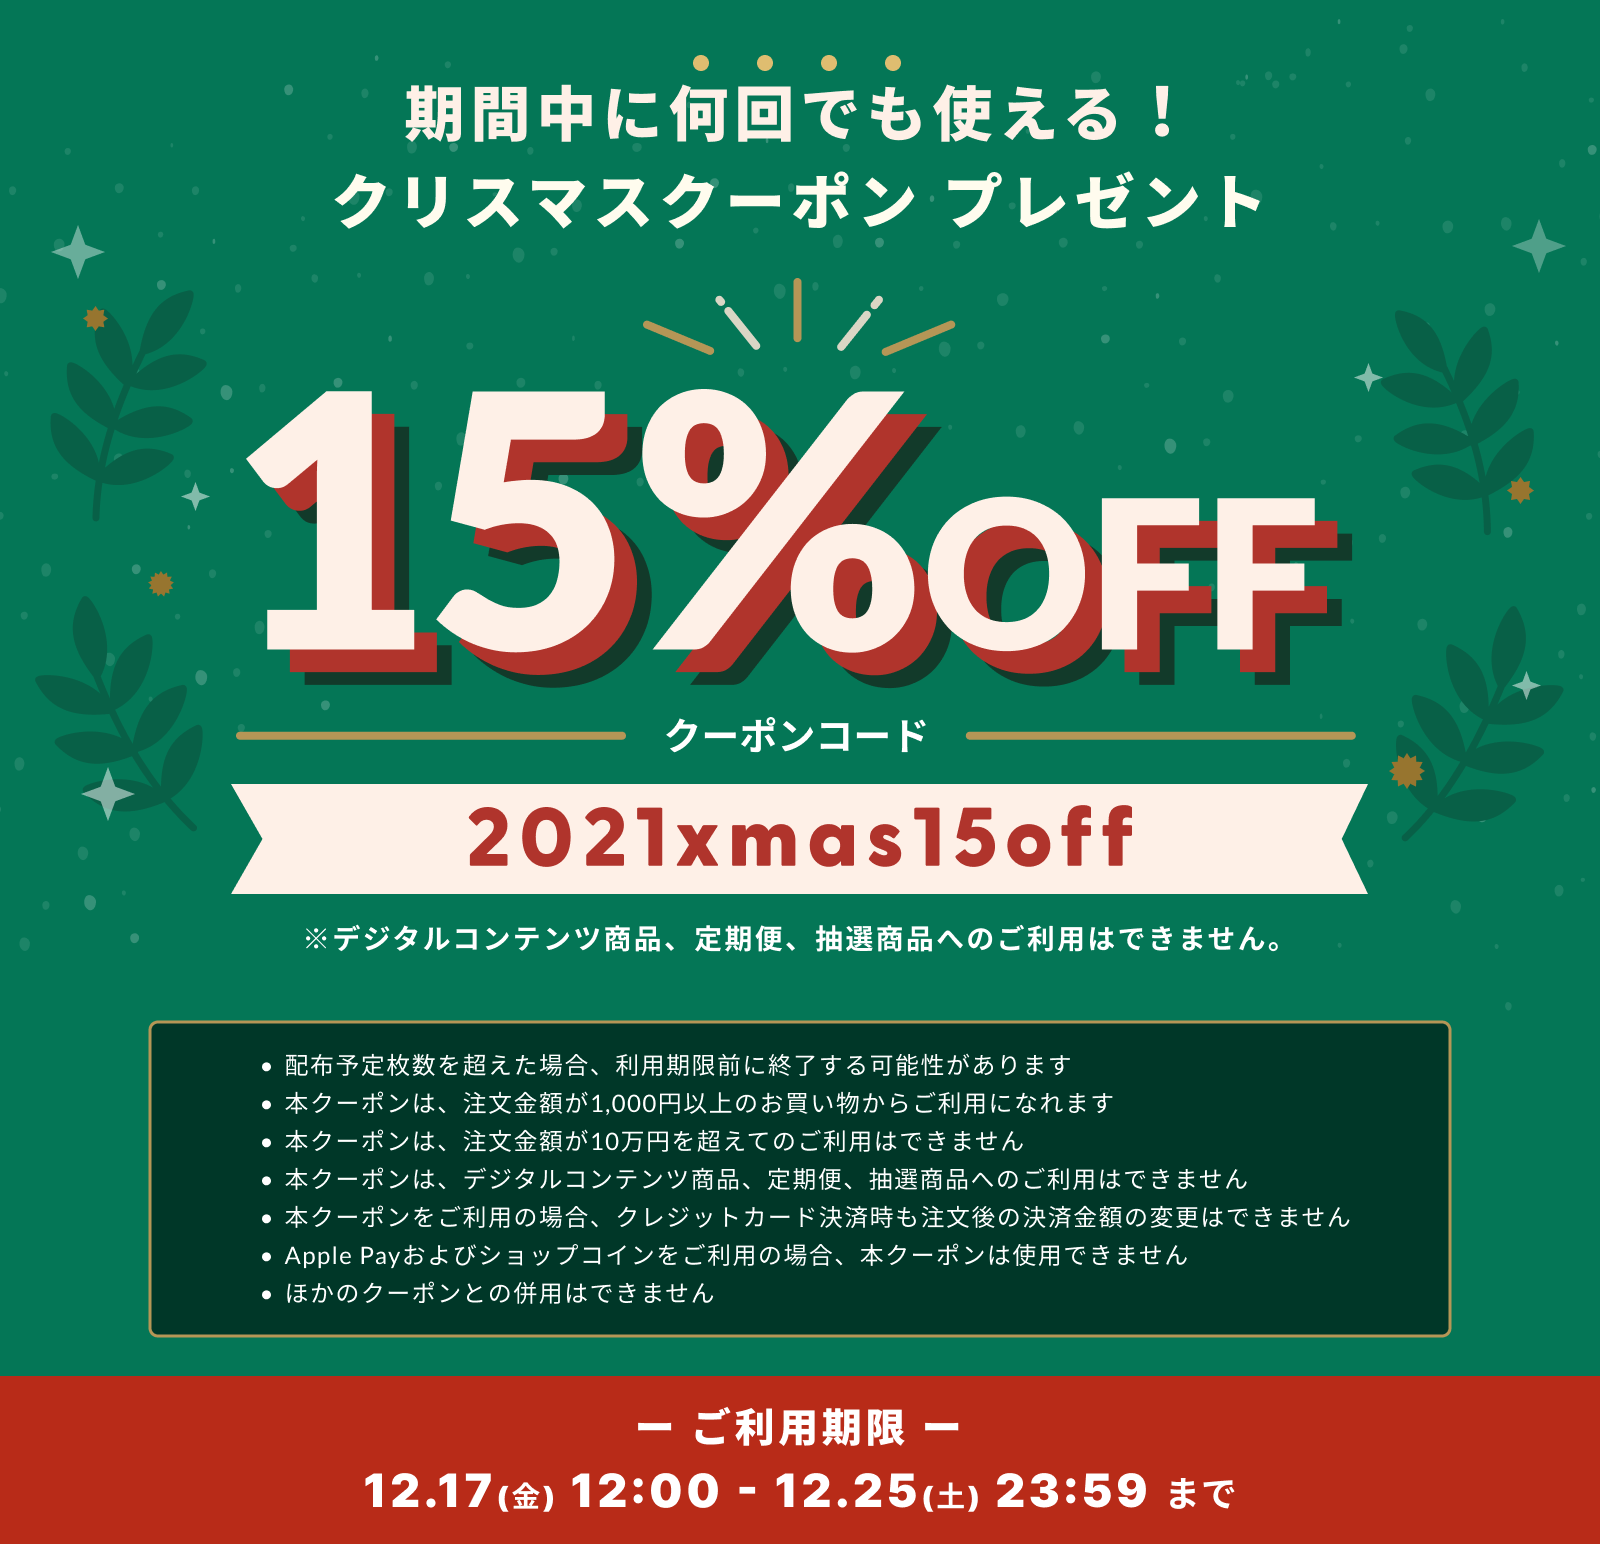 【12/17～12/25 期間限定】 クリスマスキャンペーン! お得な15%OFFクーポンをGET♪